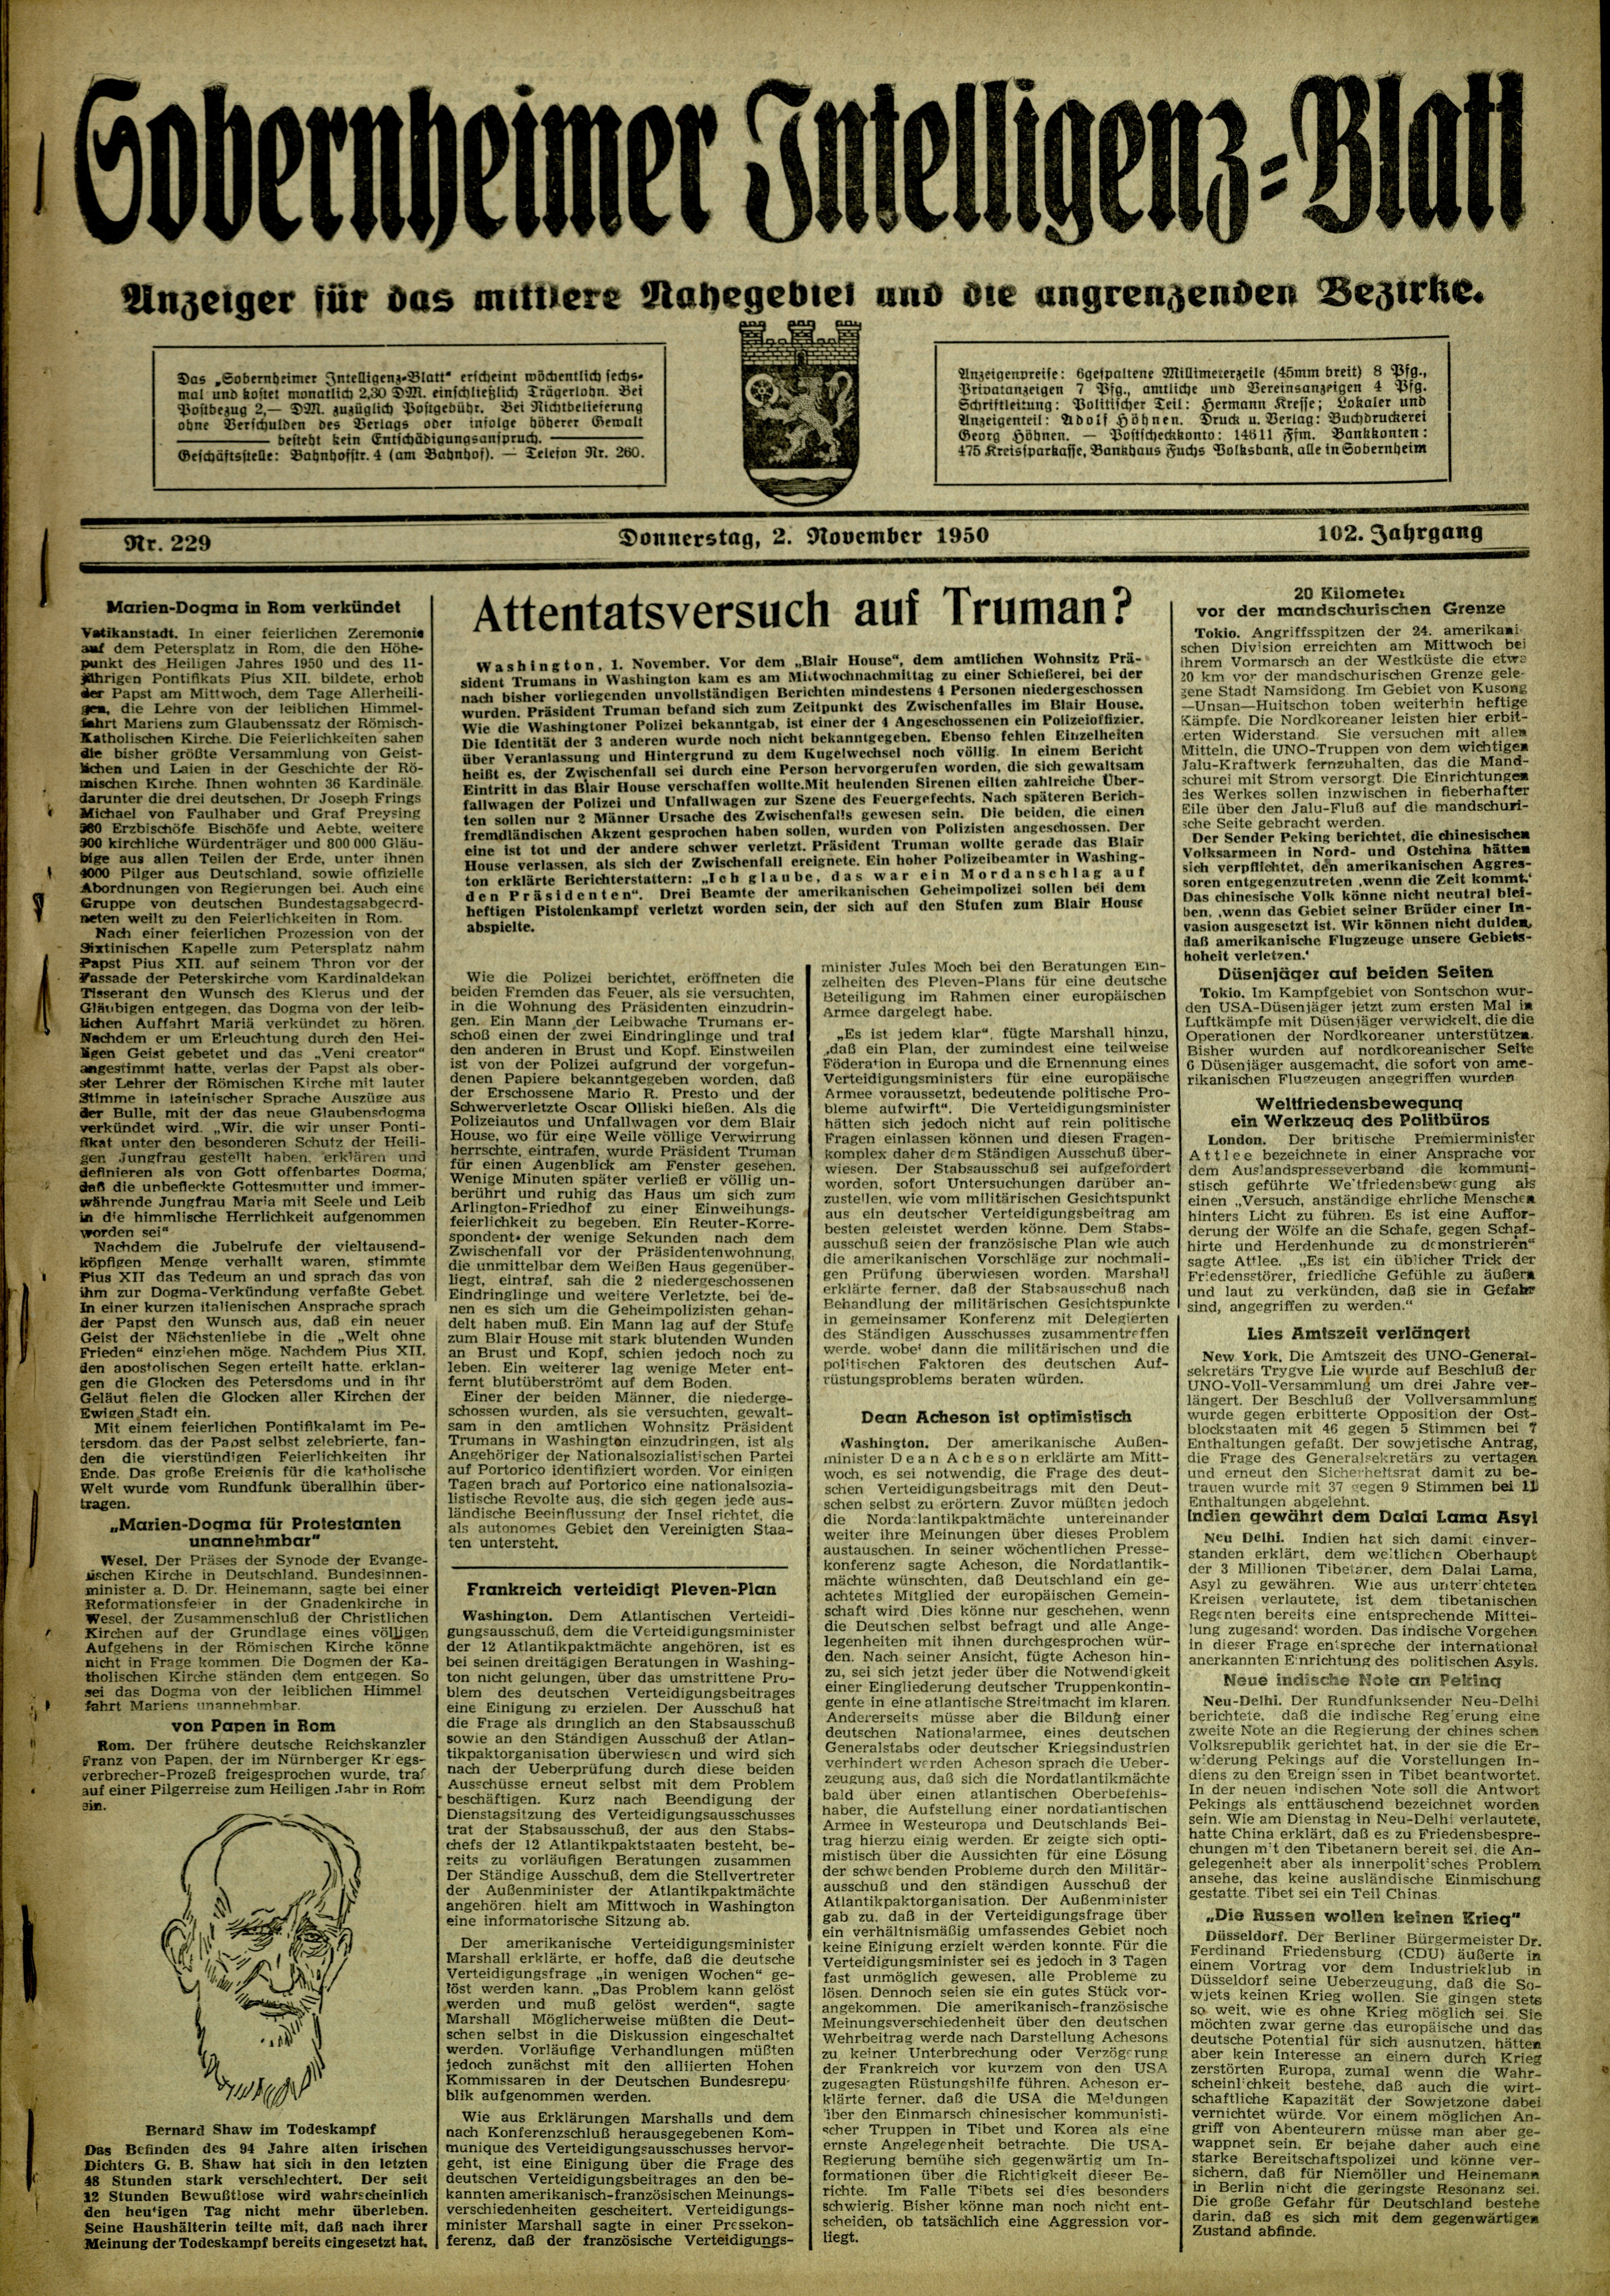 Zeitung: Sobernheimer Intelligenzblatt; November 1950, Jg. 101, Nr. 229 (Heimatmuseum Bad Sobernheim CC BY-NC-SA)